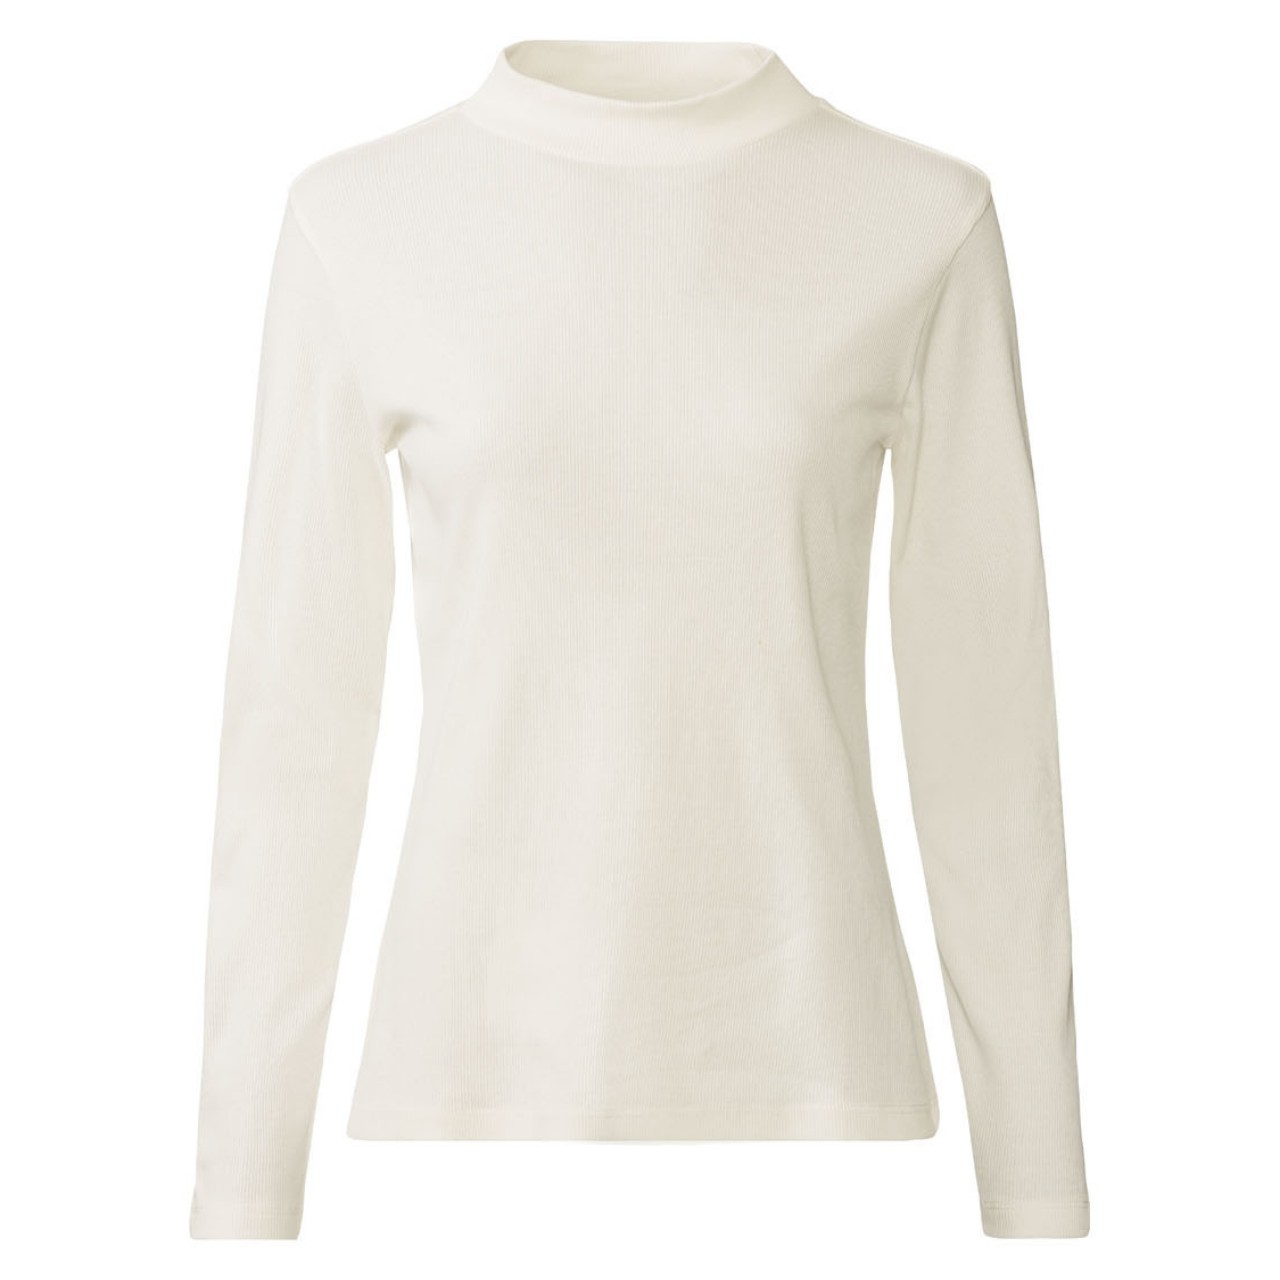 تی شرت یقه اسکی زنانه اسمارا مدل کبریتی کد LS407 مجموعه 2 عددی -  - 4